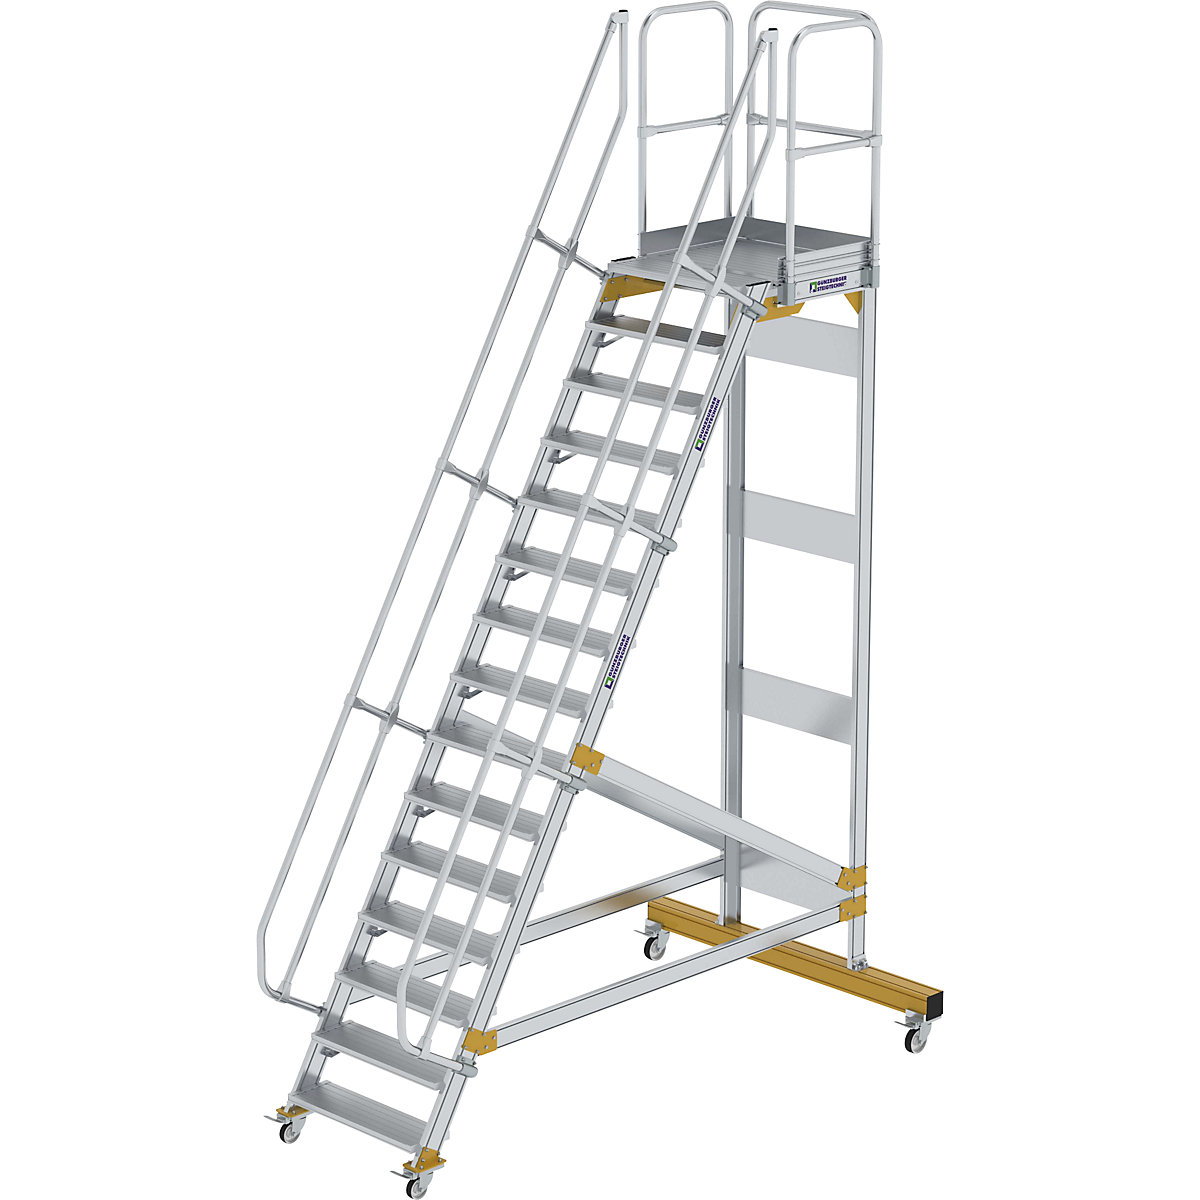 Escada de segurança móvel – MUNK, ângulo de inclinação 60°, 15 degraus-6